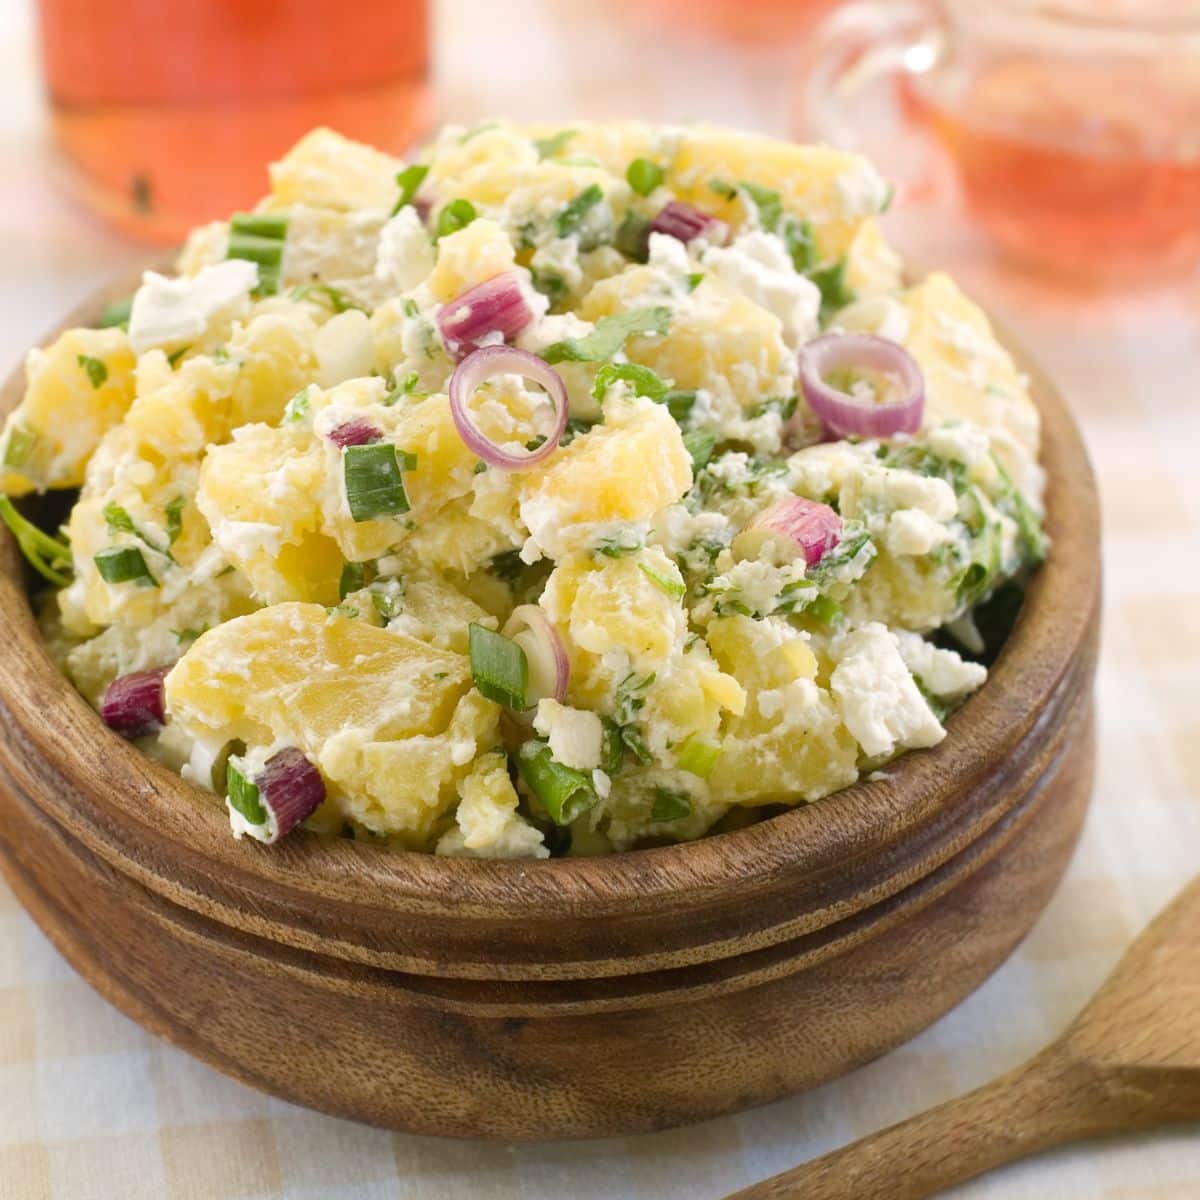 Meilleure recette de salade de pommes de terre classique à préparer pour toutes les occasions, servie dans un bol en bois sur fond clair.